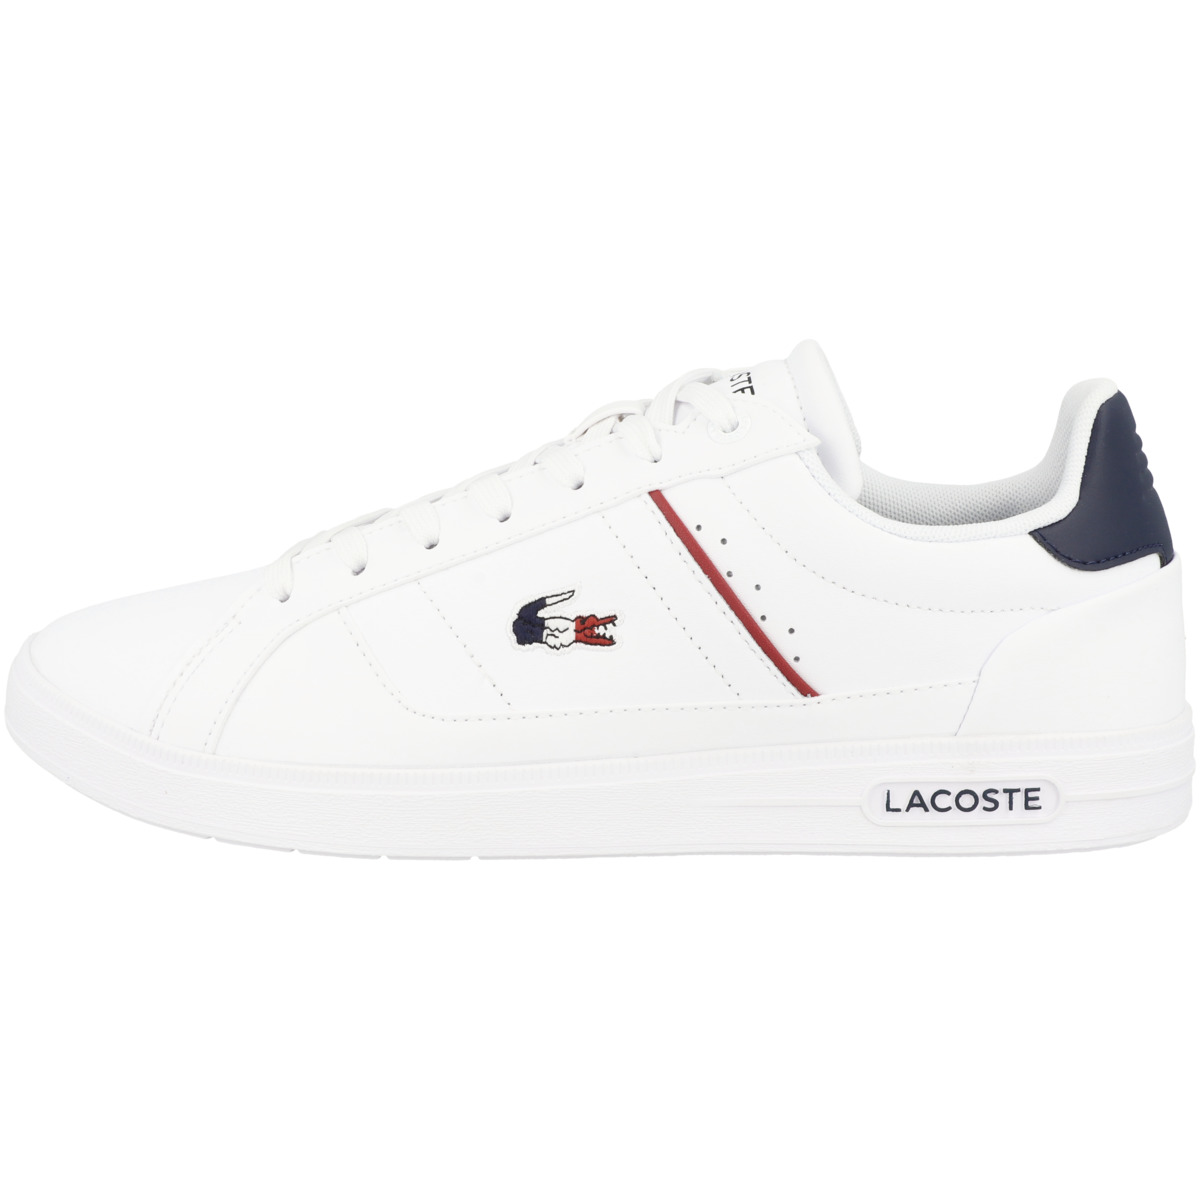 Низкие кроссовки Lacoste low Europa Pro Tri 123 1 SMA, белый кроссовки lacoste europa pro tri 123 белый темно синий красный